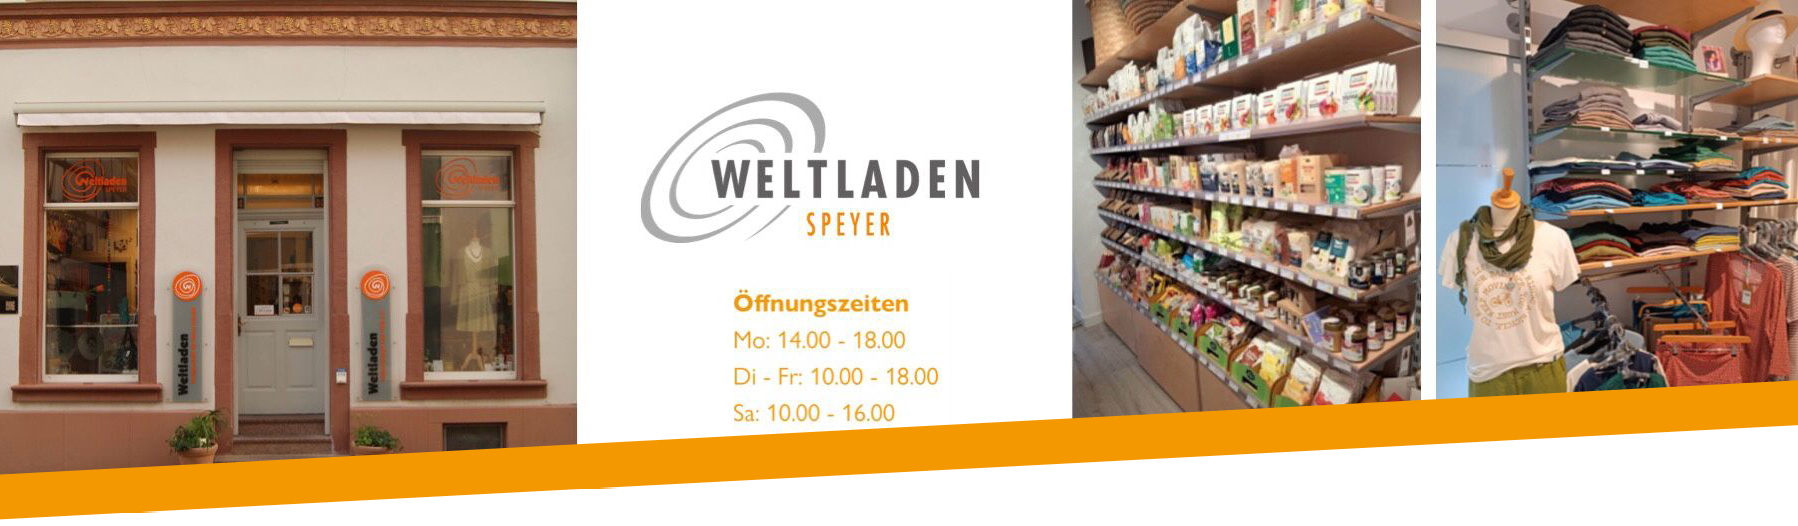 Weltladen-Speyer Startheader